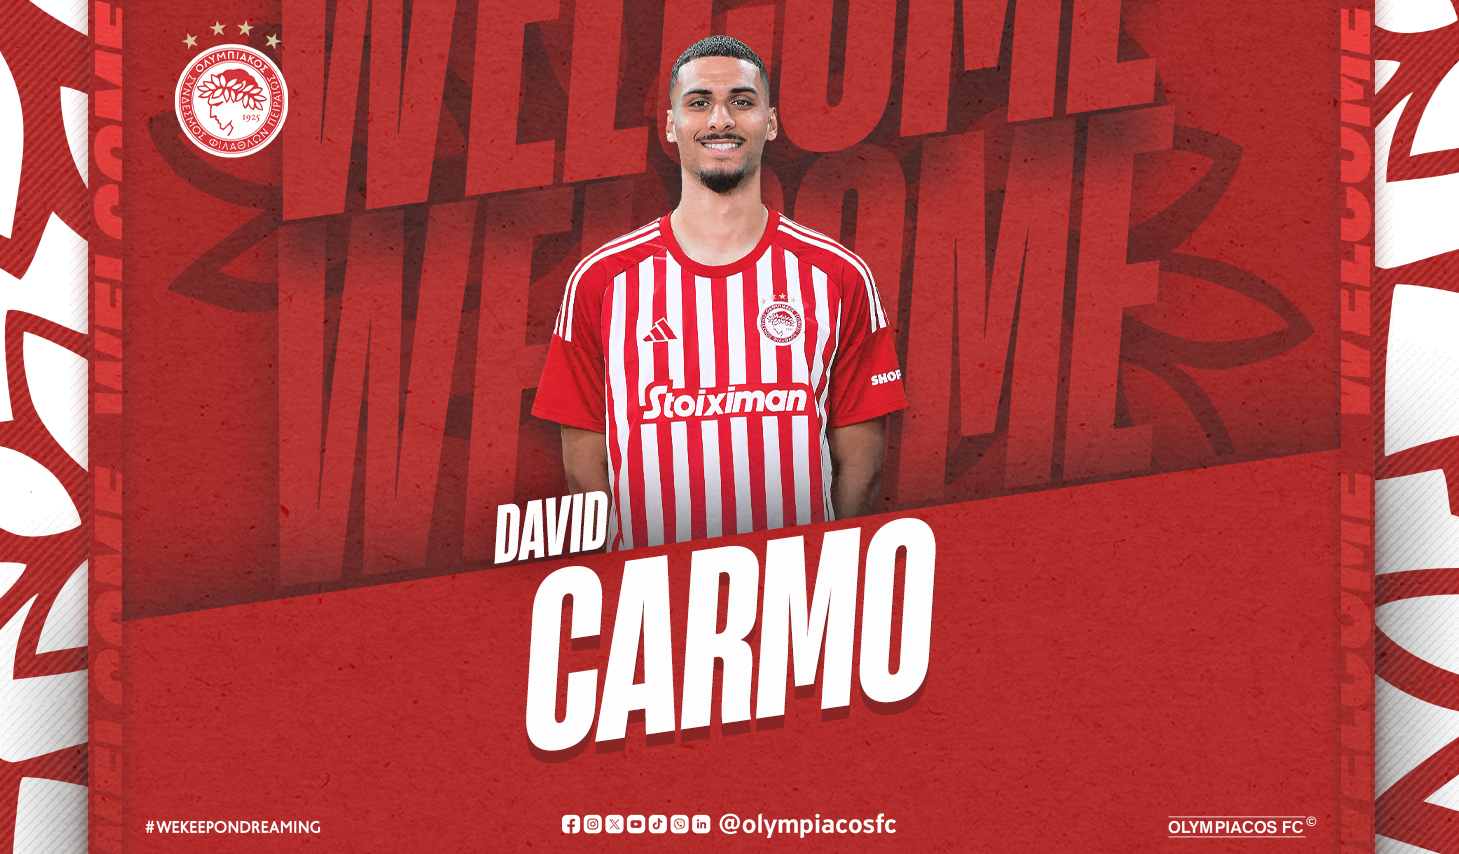 David Carmo joins Olympiacos